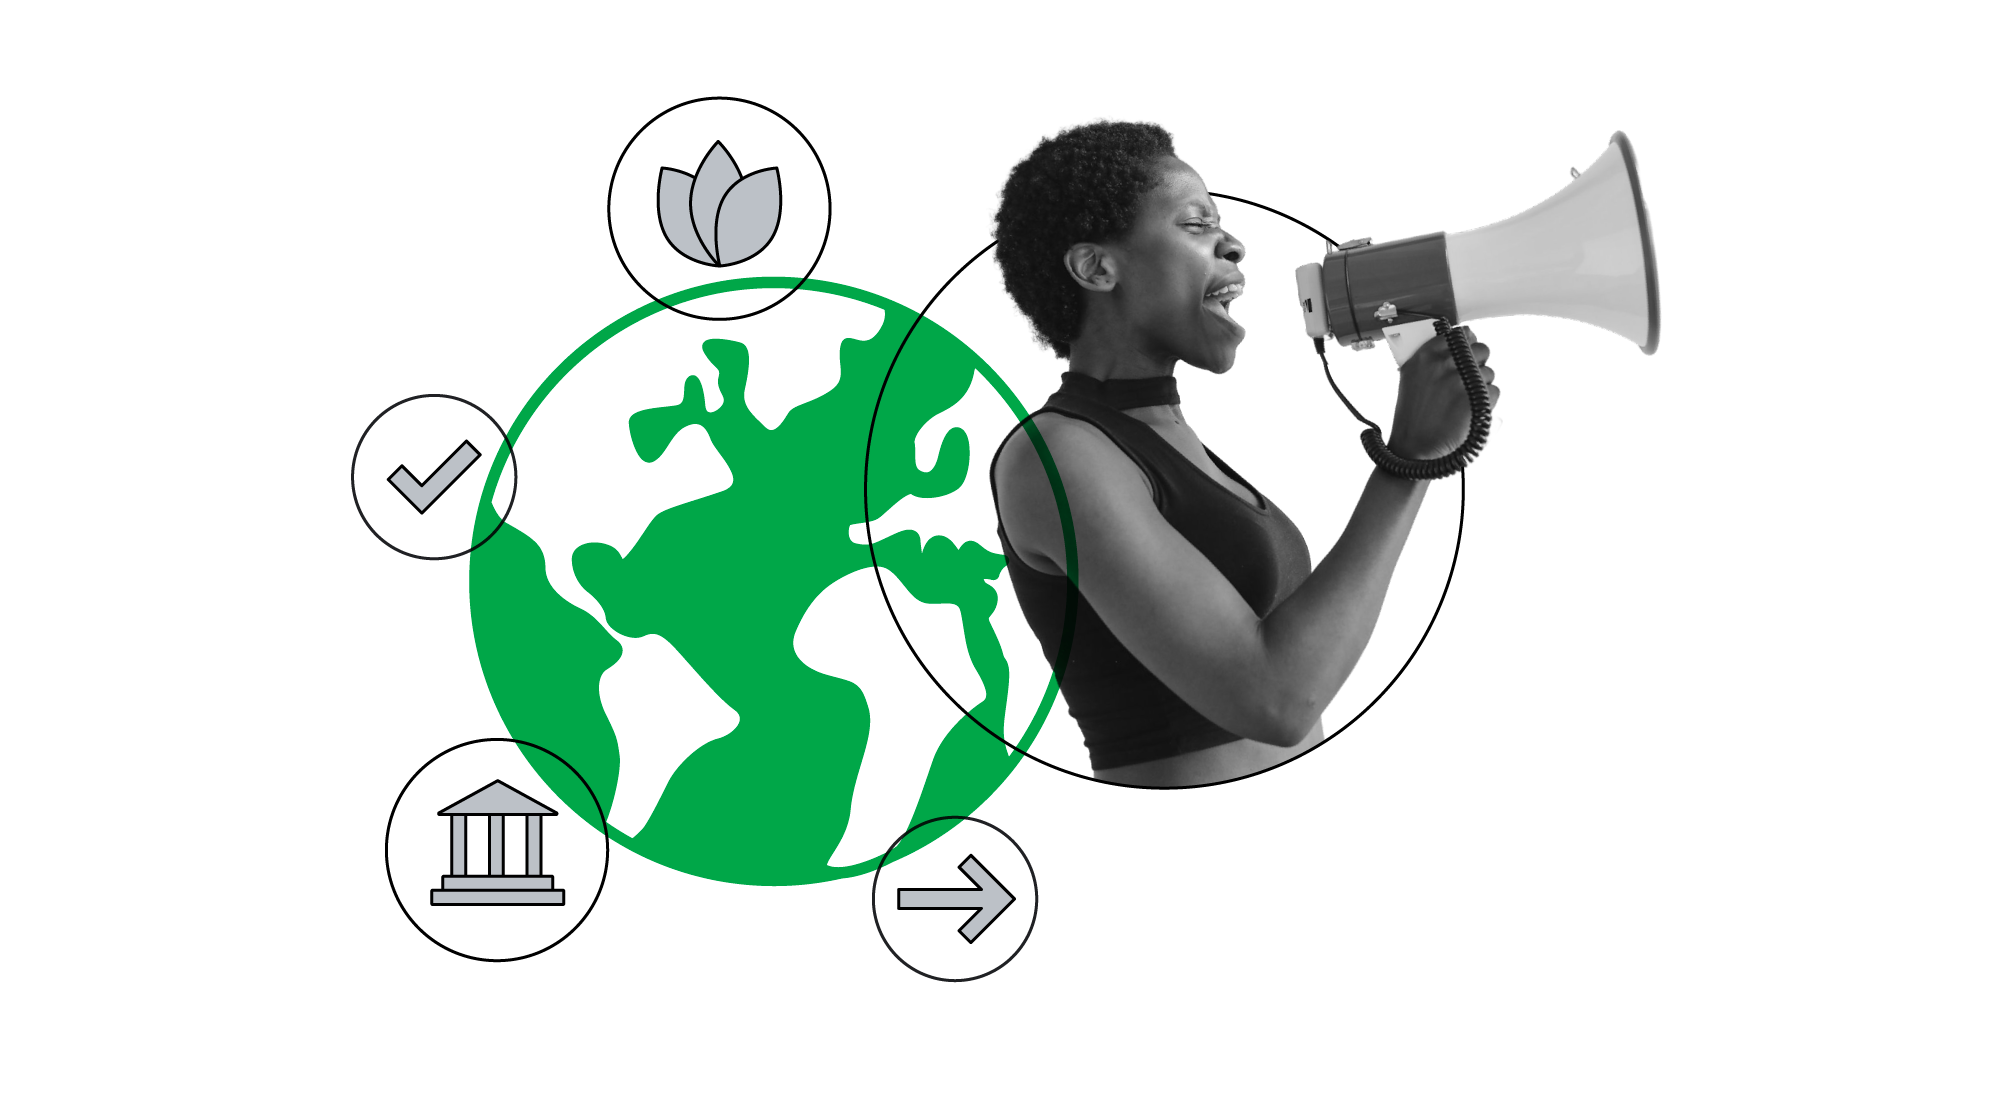 À direita, uma mulher negra está falando com um megafone na mão. À esquerda, há uma imagem do globo, e ao seu redor ícones que representam governança e meio ambiente, além de um símbolo de tarefa concluída e uma seta apontando para a direita.